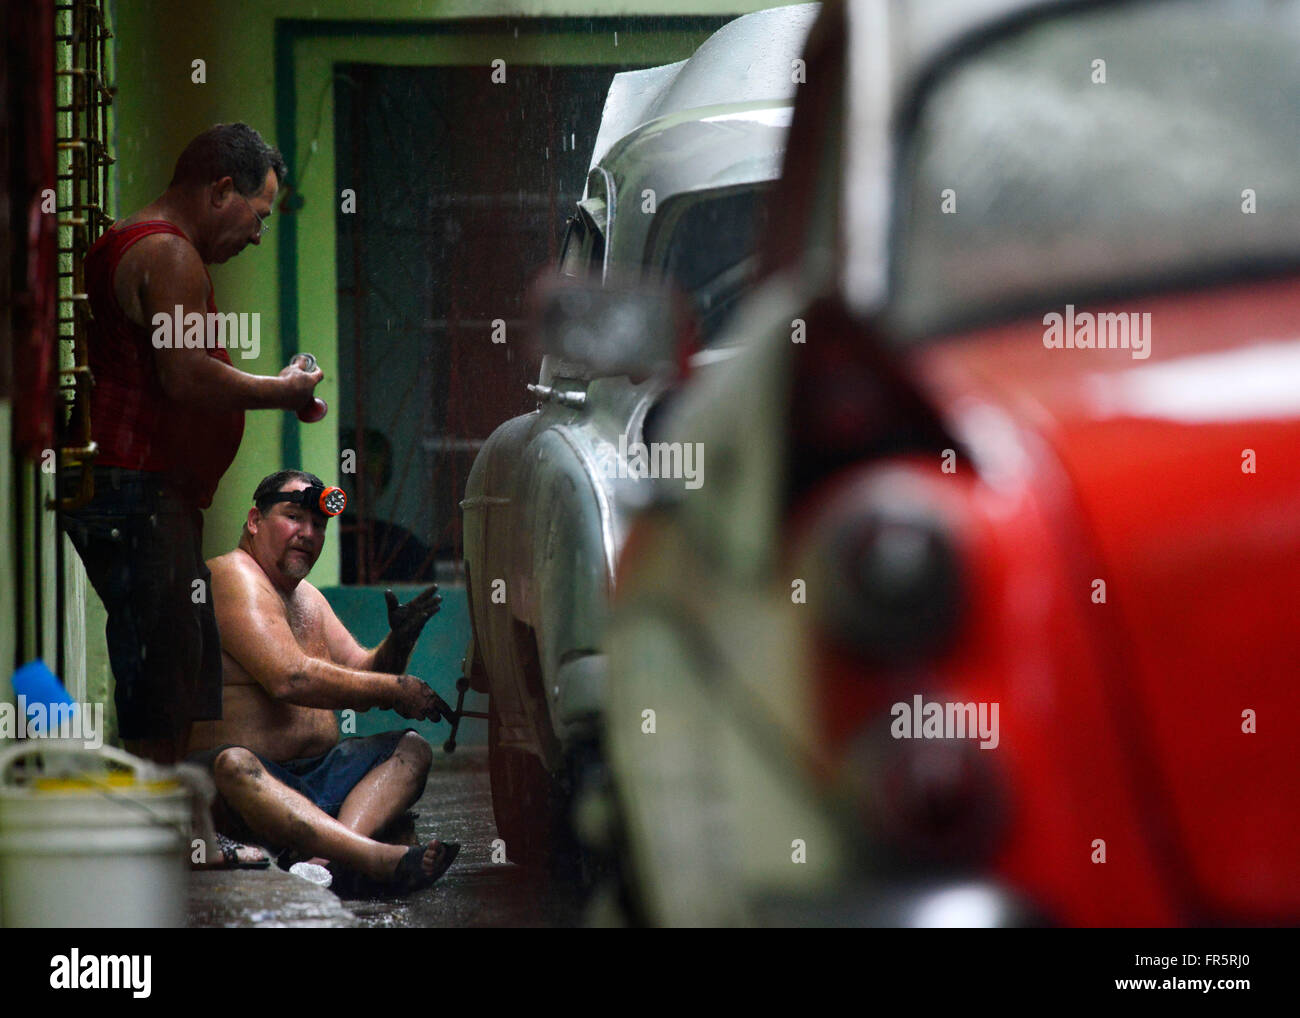 Kfz-Mechaniker arbeiten unter einem Vintage American Auto in Havanna, Kuba, 20. März 2016, vor Obamas Ankunft. Präsident Barack Obama wird der erste Sitzung U.S. Präsident, das kommunistische Land seit fast 90 Jahren zu besuchen. (CTK-Foto) Stockfoto